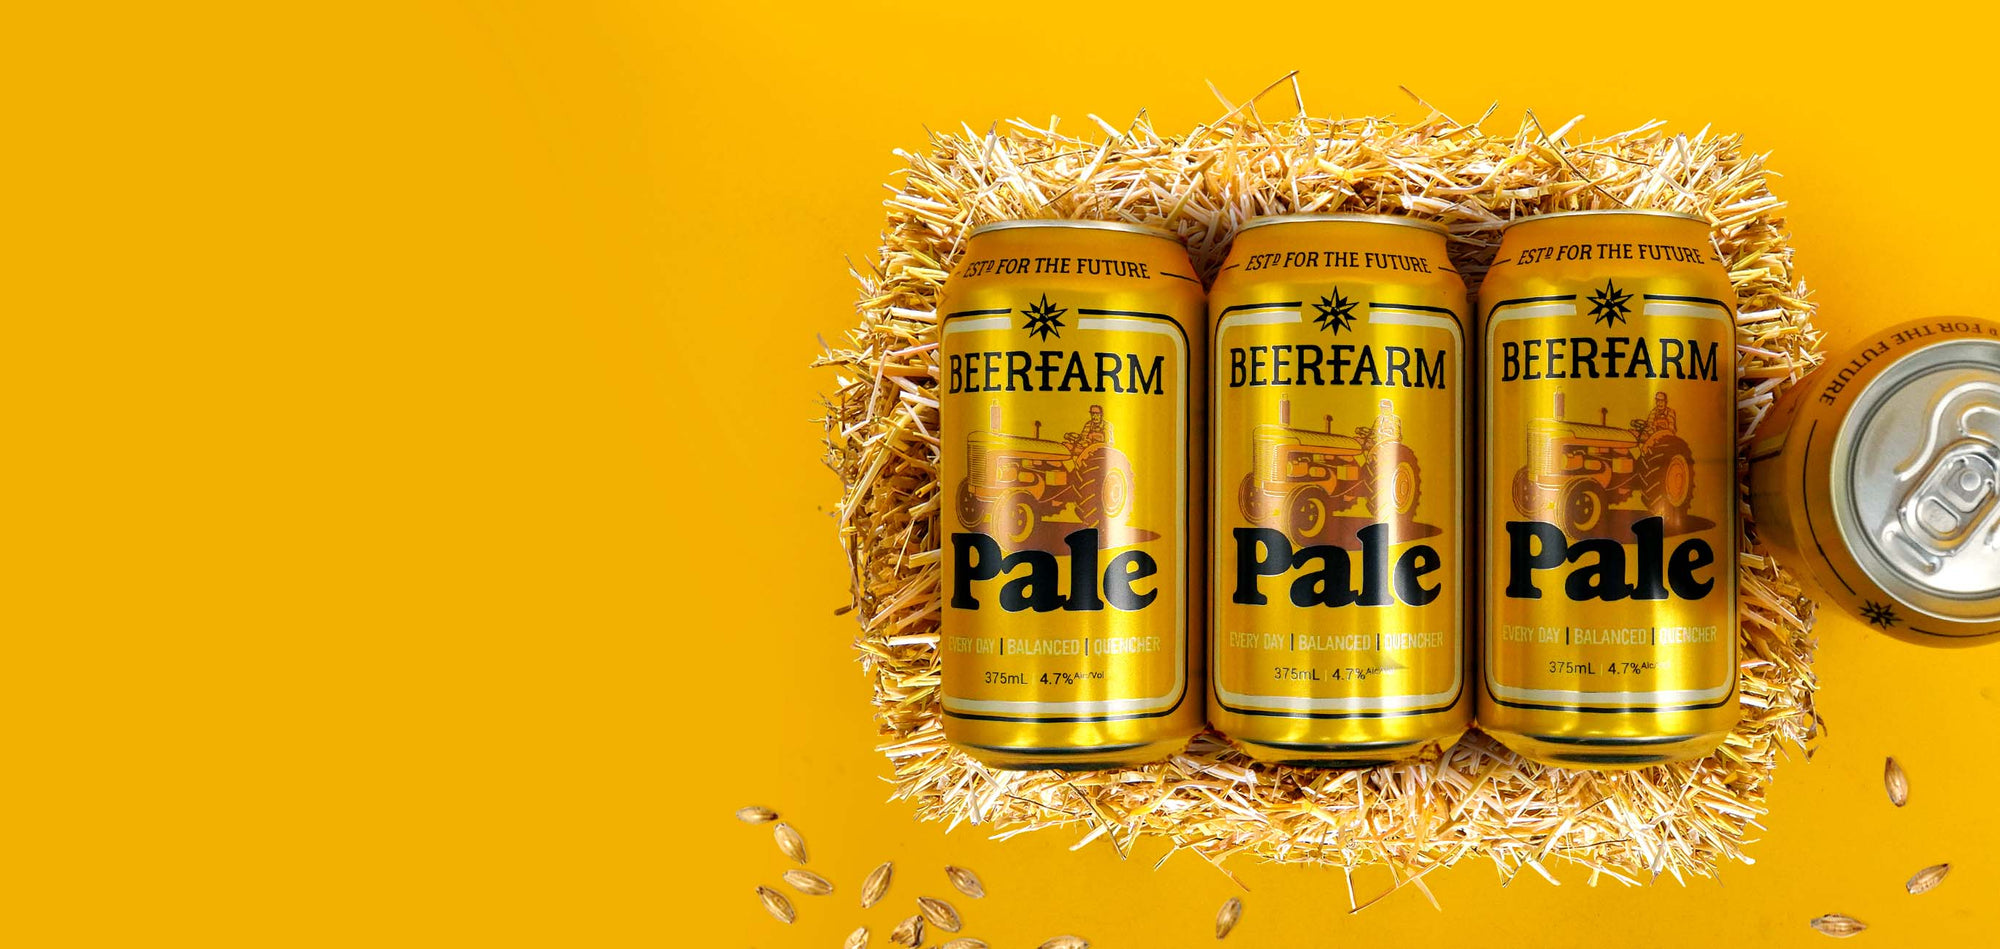 Beerfarm Australian Pale Ale